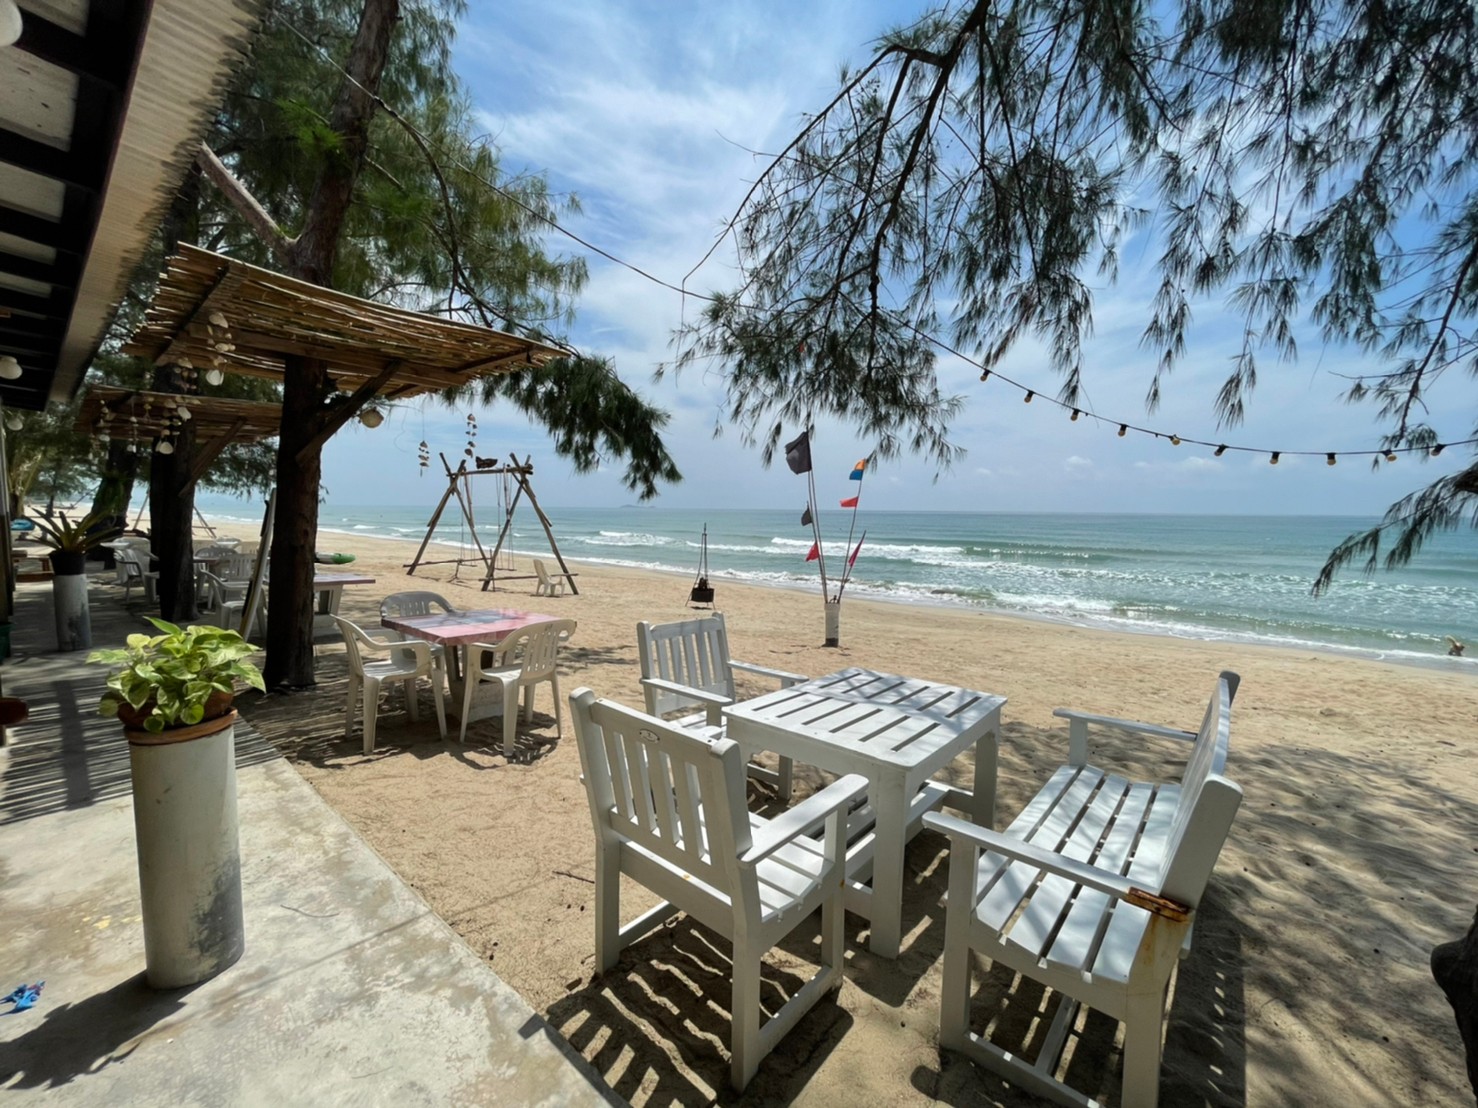 Foto de Saeng Arun Beach - lugar popular entre los conocedores del relax